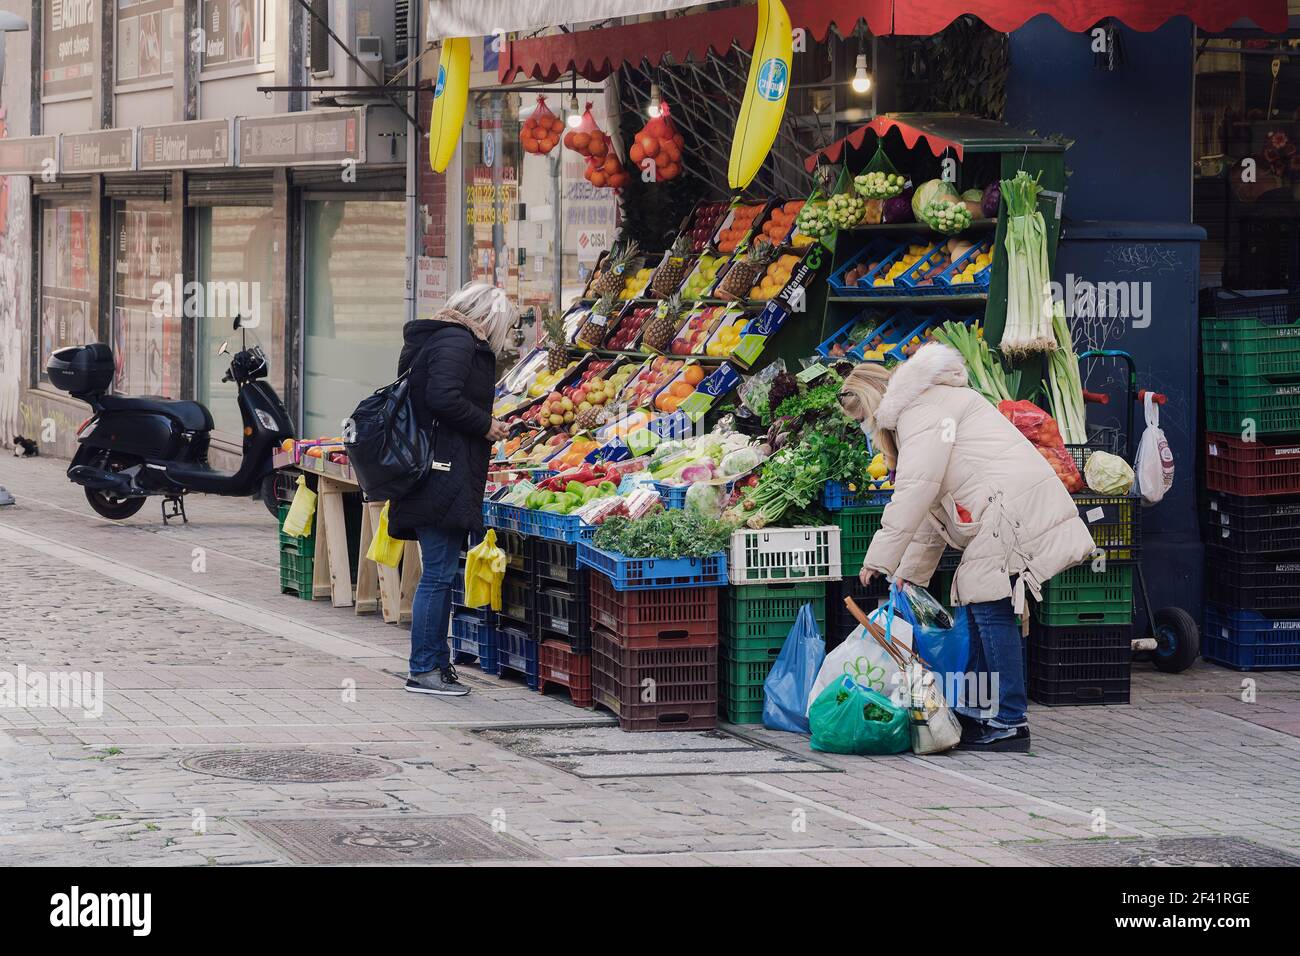 Salonicco, Grecia - Marzo 13 2021: Persone fuori negozio di greengrocer con mascherine covid-19. Negozio di alimentari con folla non identificata che indossa maschere protettive all'ingresso del negozio nel centro della città. Foto Stock